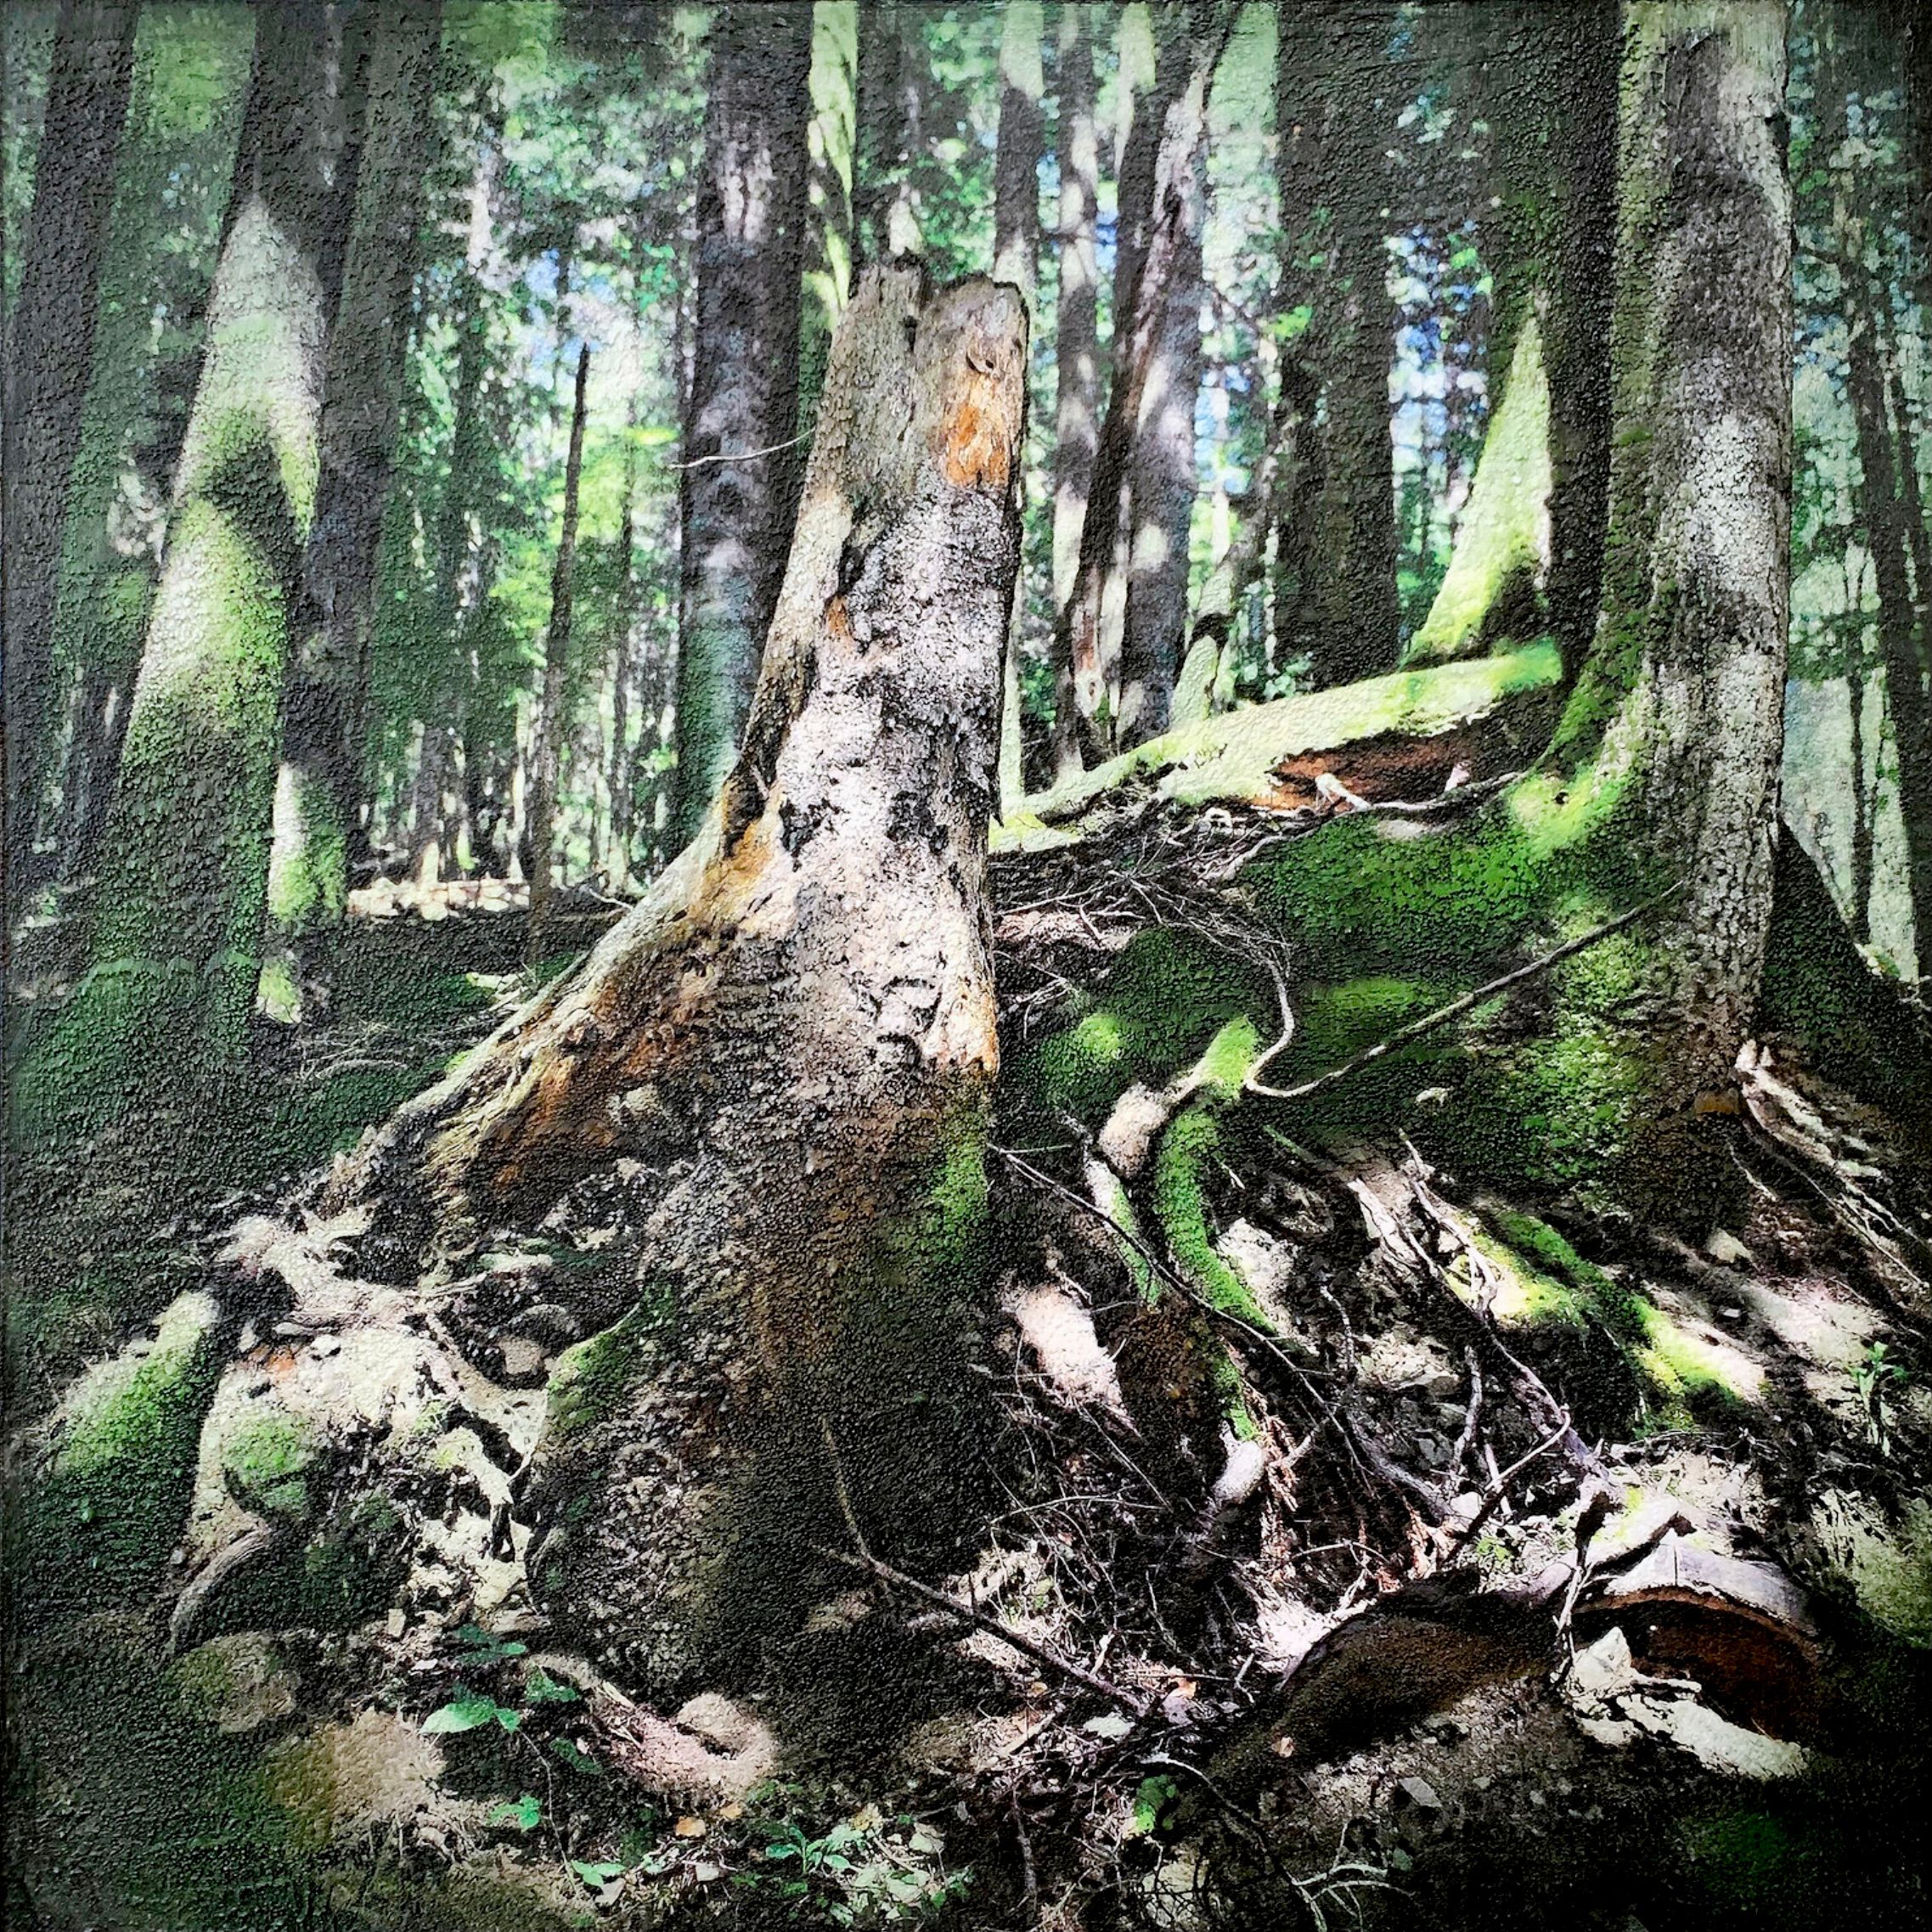 L'opera di Karin Vermeer "Riserva Statale Badia Prataglia-1" è una combinazione ed elaborazione digitale di fotografie, dipinti e collage in una nuova opera d'arte, molto strutturata e dettagliata. Ci si può quasi immergere in questo paesaggio forestale.